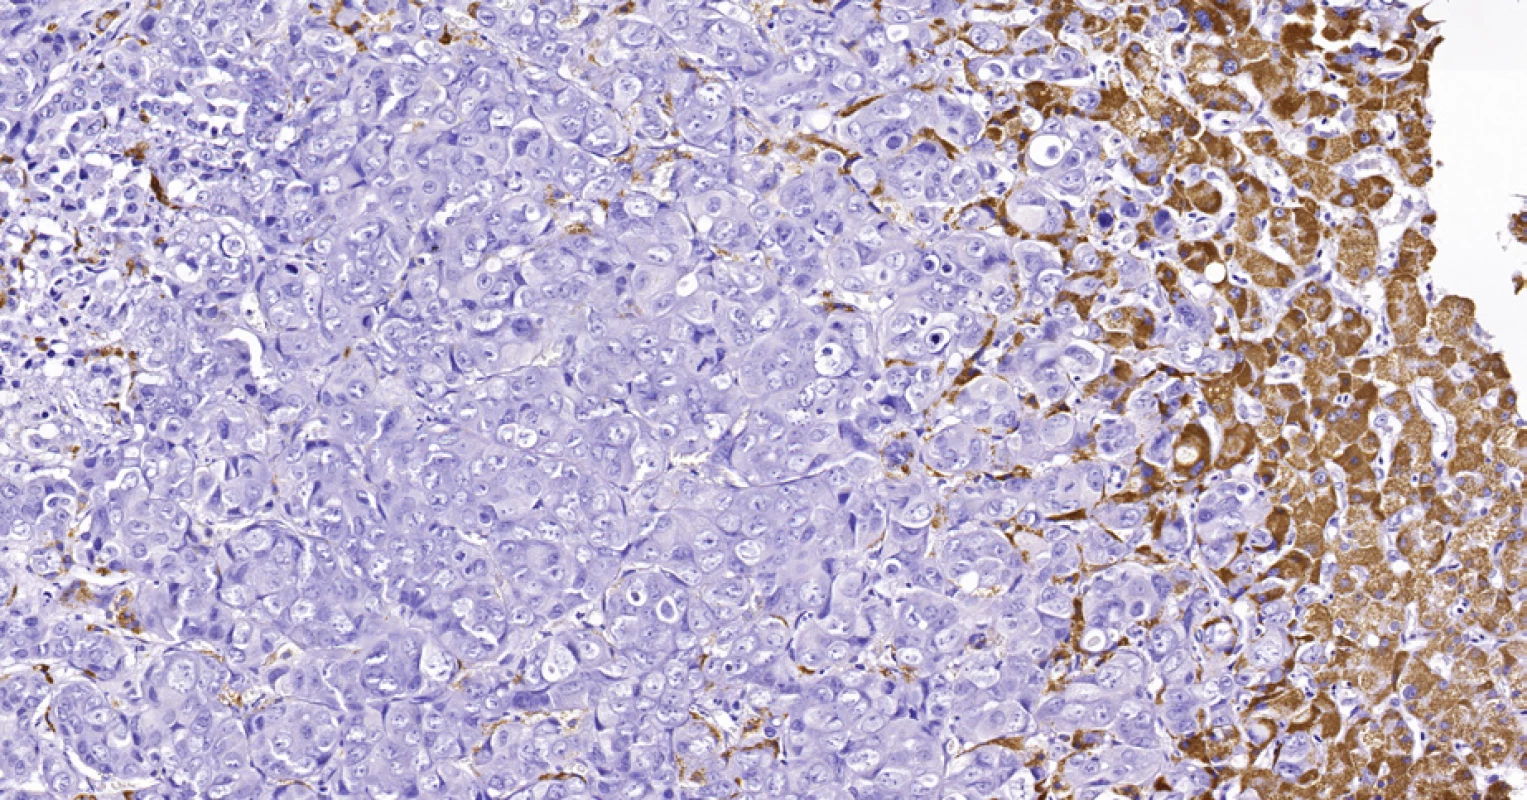 Periferní typ intrahepatálního cholangiocelulárního karcinomu, stejná biopsie jako na obr. 6. Nádorové buňky (vlevo) jsou imunohistochemicky negativní v průkazu HSA, zatímco hepatocyty (vpravo) se pozitivně barví hnědě. Histologický řez z punkční biopsie, imunohistochemie HSA, 20×.